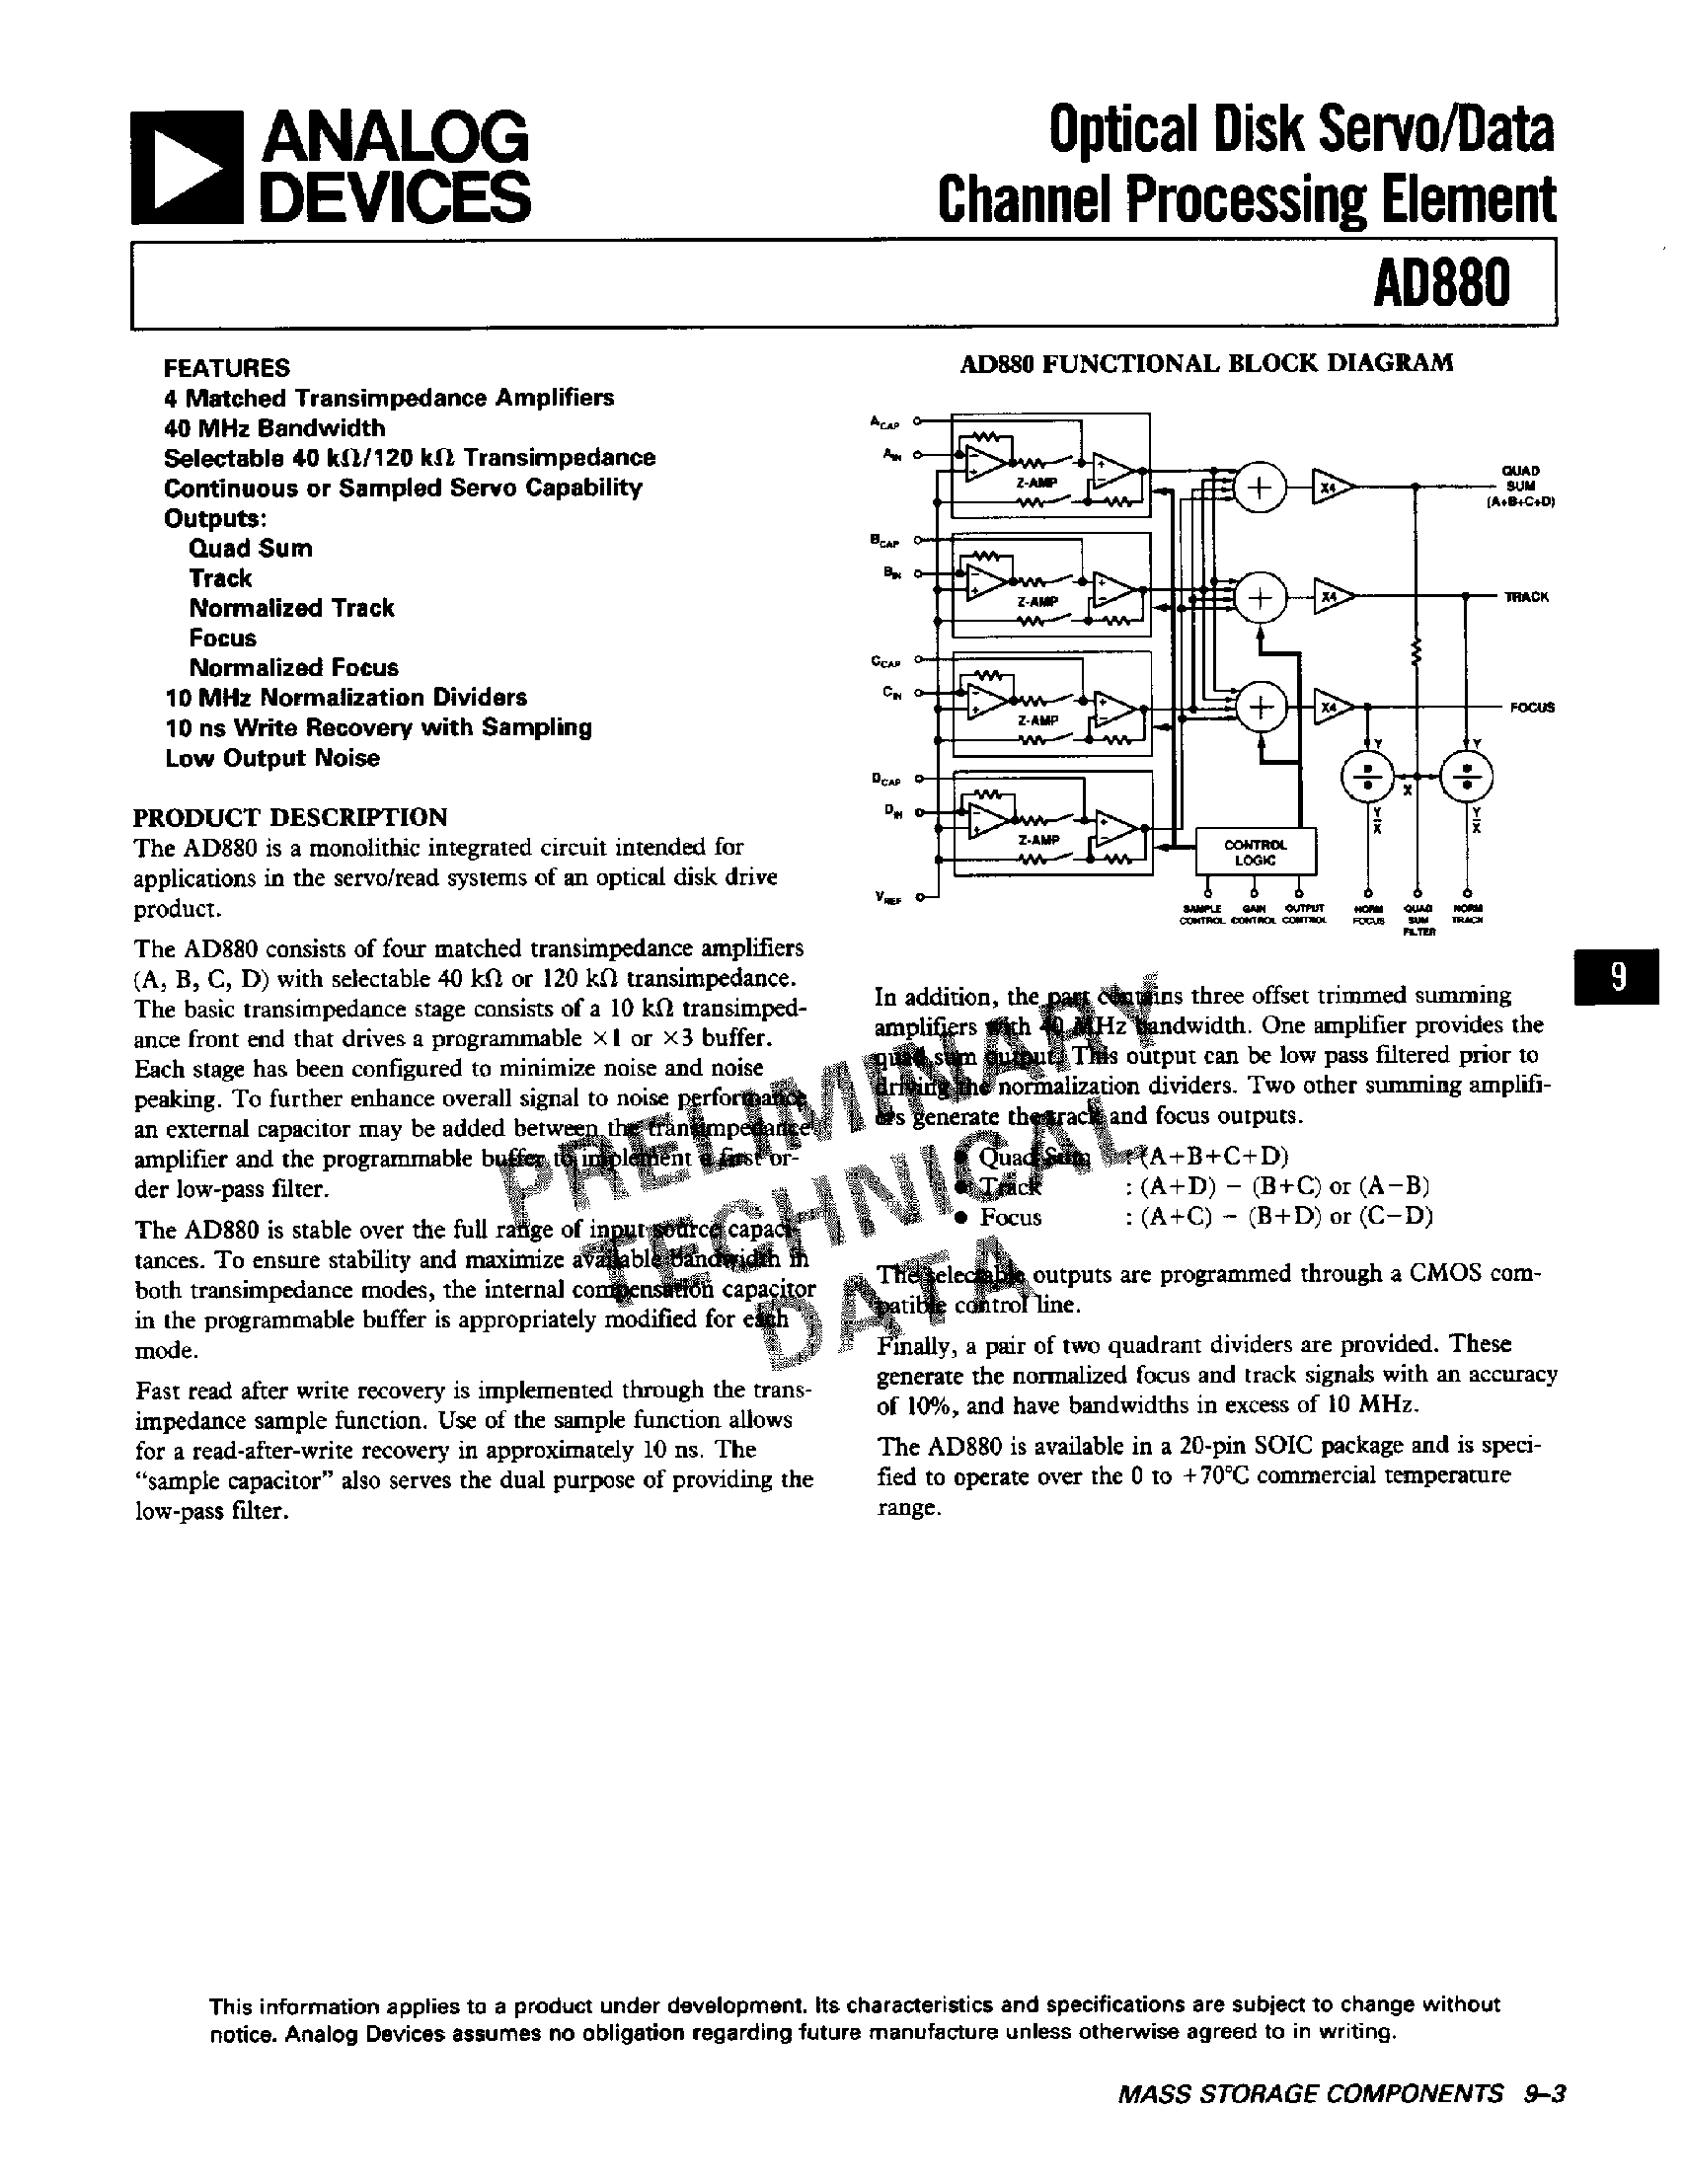 Даташит AD880JR - Optical Disk Servo / Data Channel Processing Element страница 1